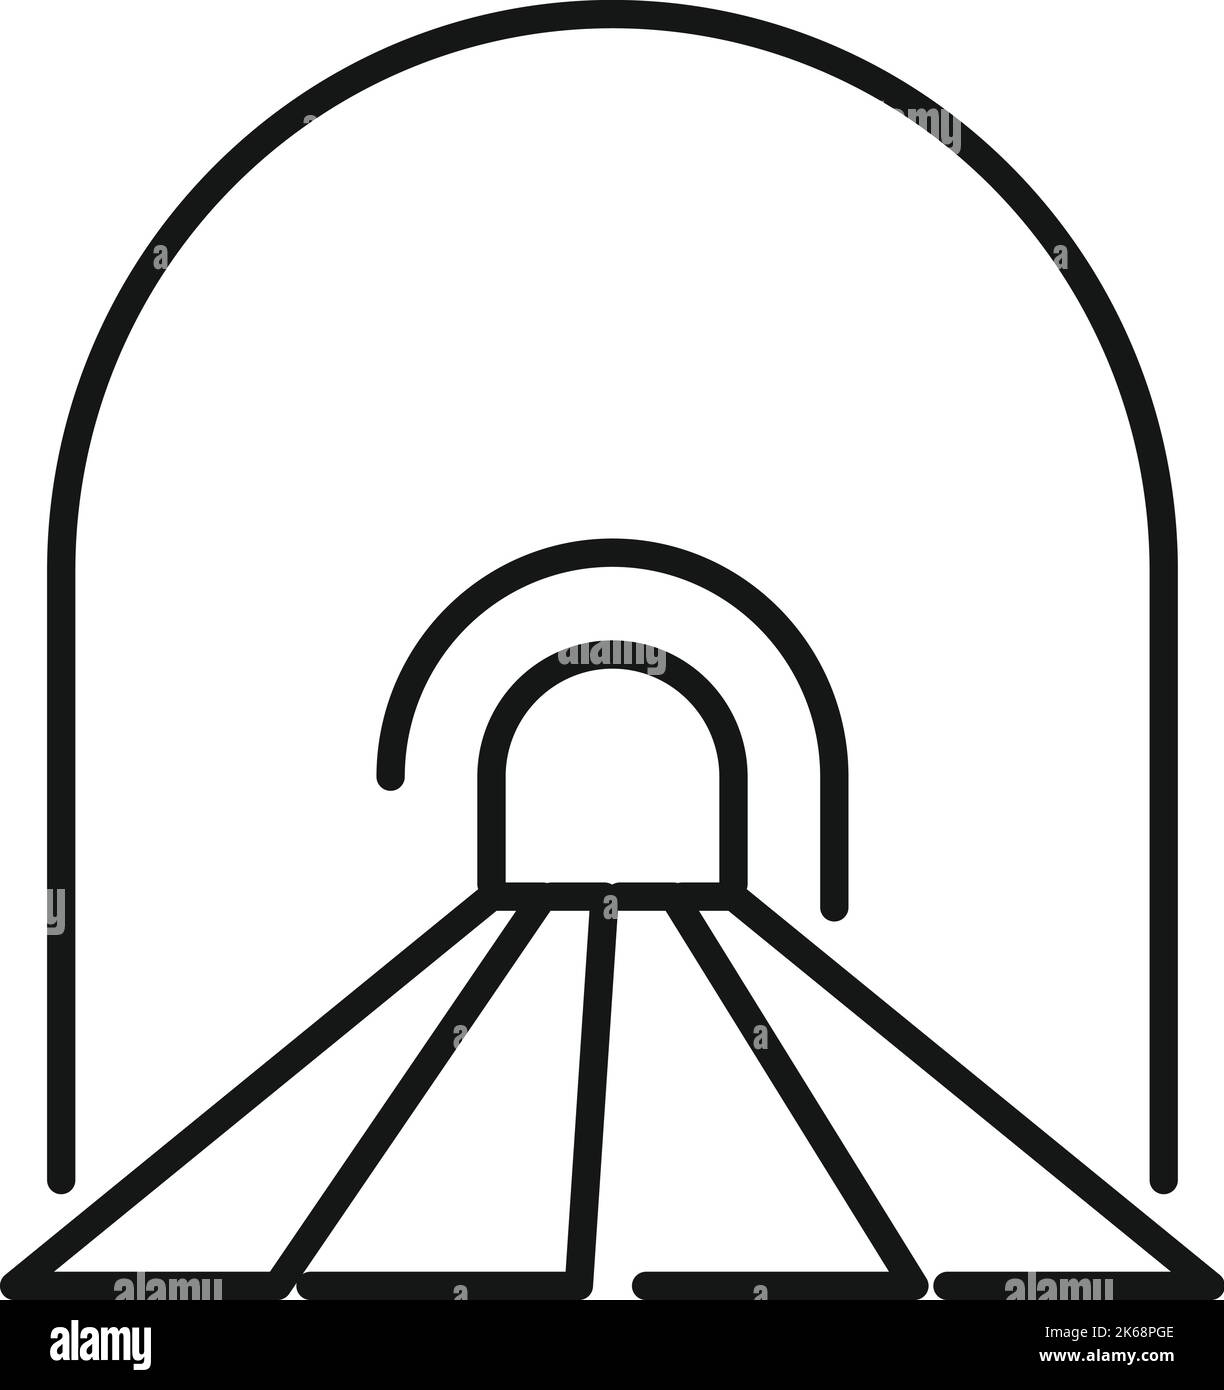 Vektorgrafik für den Umriss des unterirdischen Tunnels. Straßenwagen. Blickstein Stock Vektor